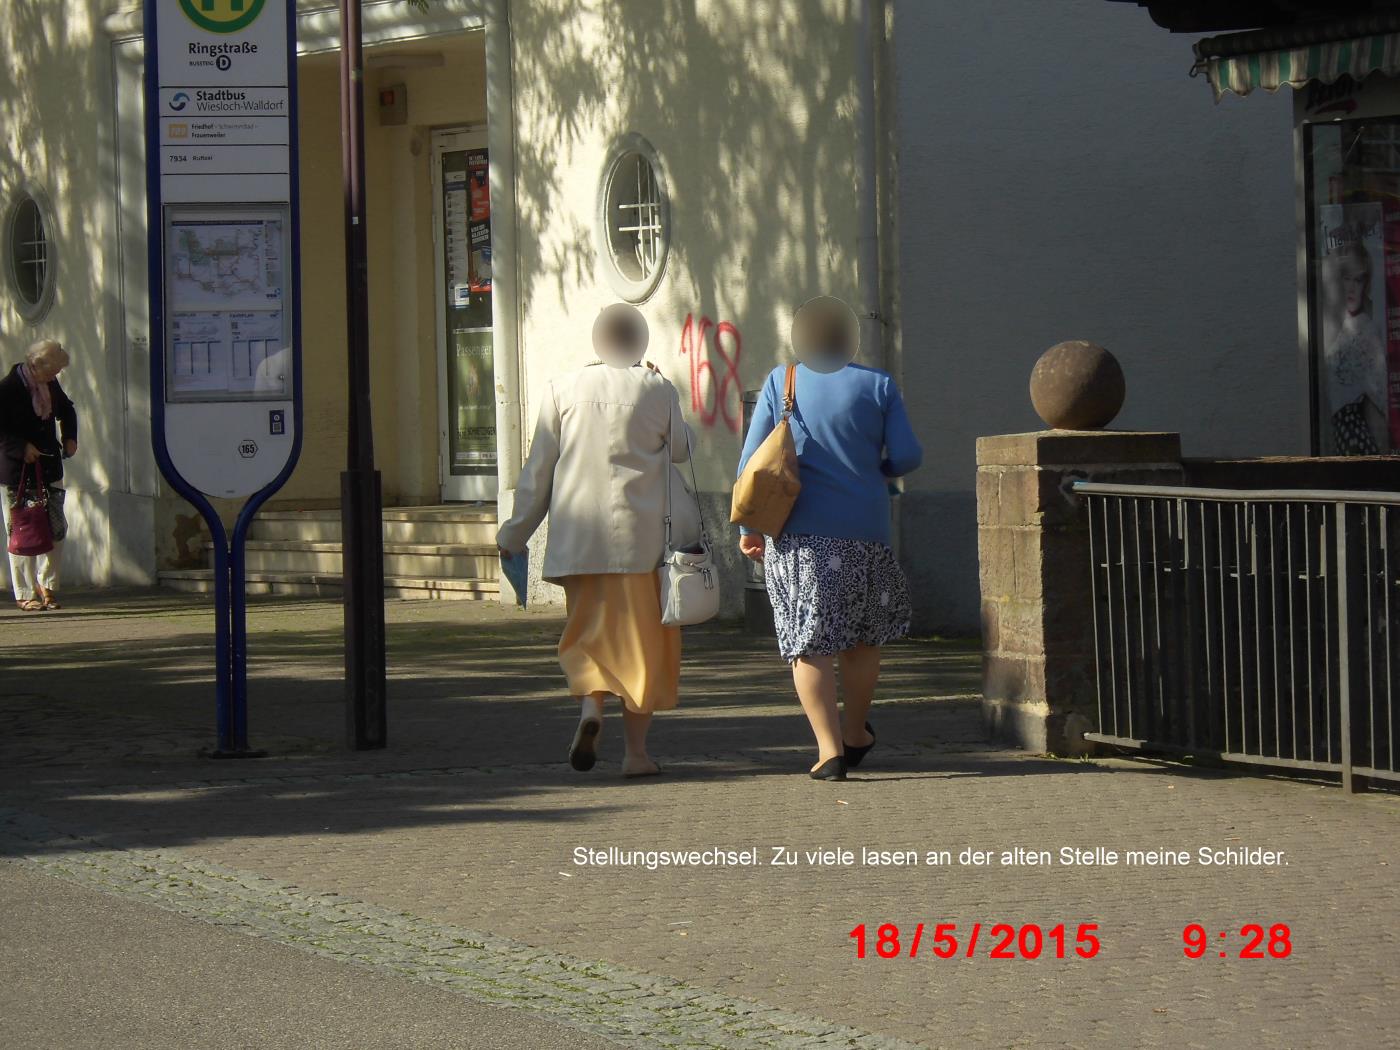 Jehovas Zeugen kämpfen um ihre Oberhoheit in der Wieslocher Fußgängerzone.